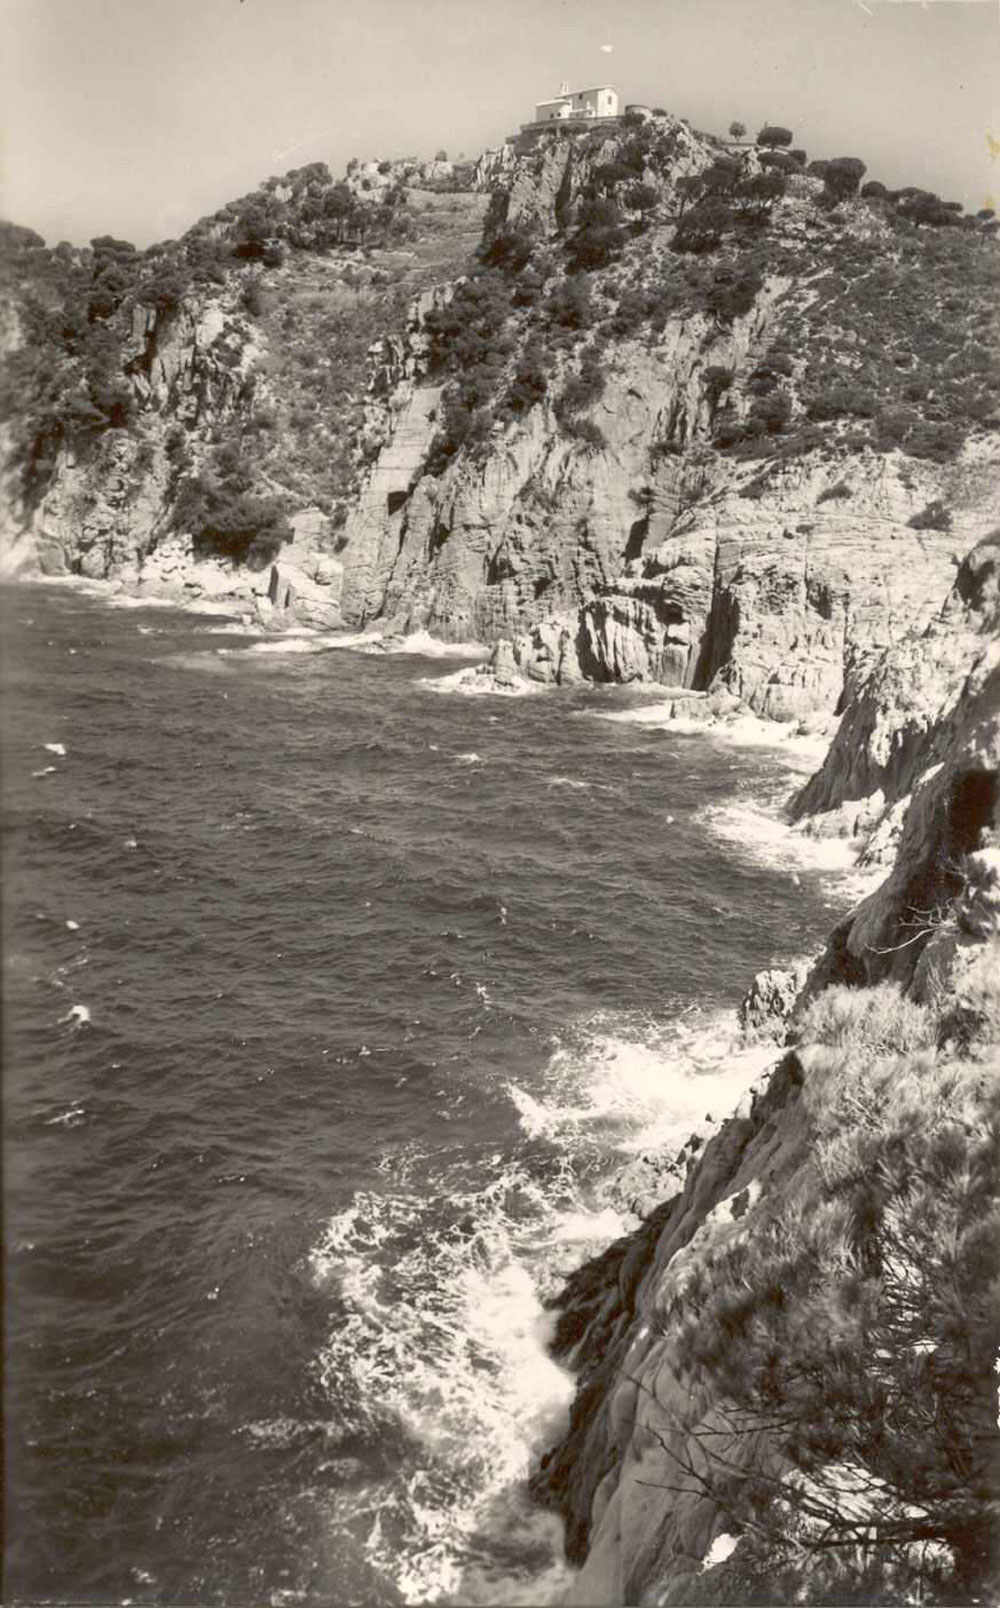 Costa des de la punta de la Cova fins a cala Vigatà amb l’ermita de Sant Elm, cap al 1965 AMSFG. Col·lecció Josep Escortell (Autor: J. Cebollero)